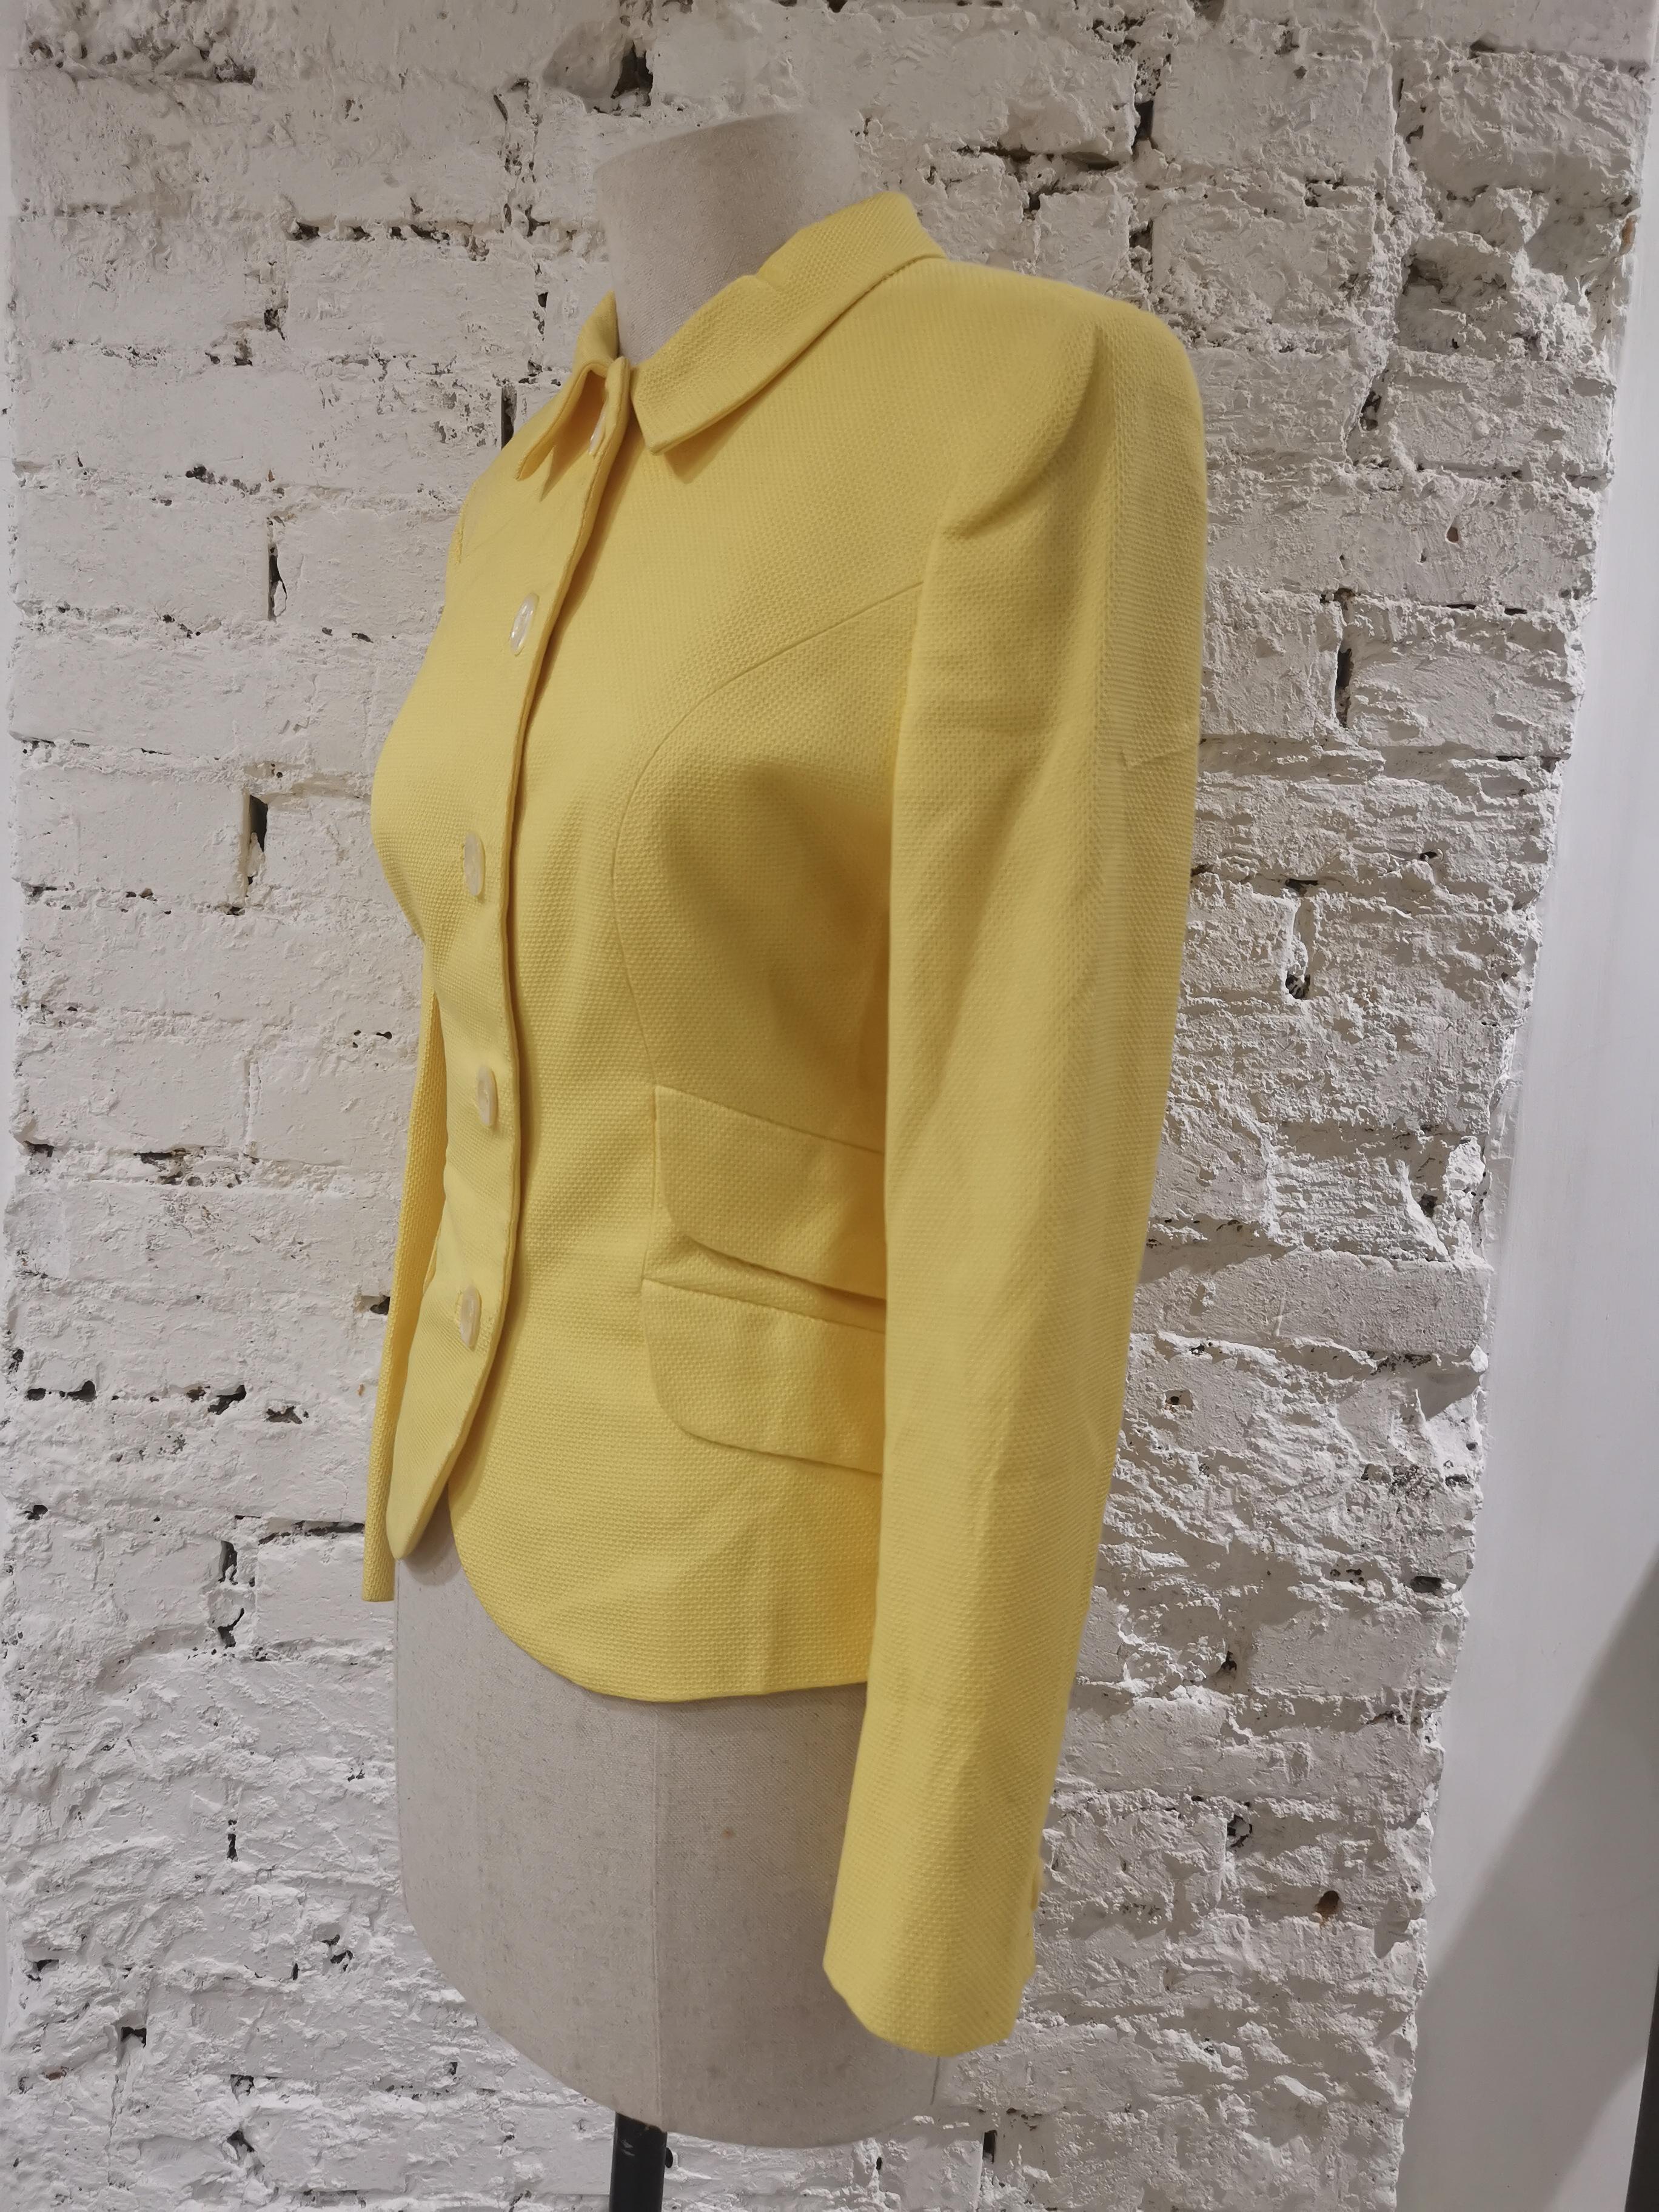 Gelbe Jacke von Versace
vollständig in Italien hergestellt in Größe 42
zusammensetzung: Baumwolle
